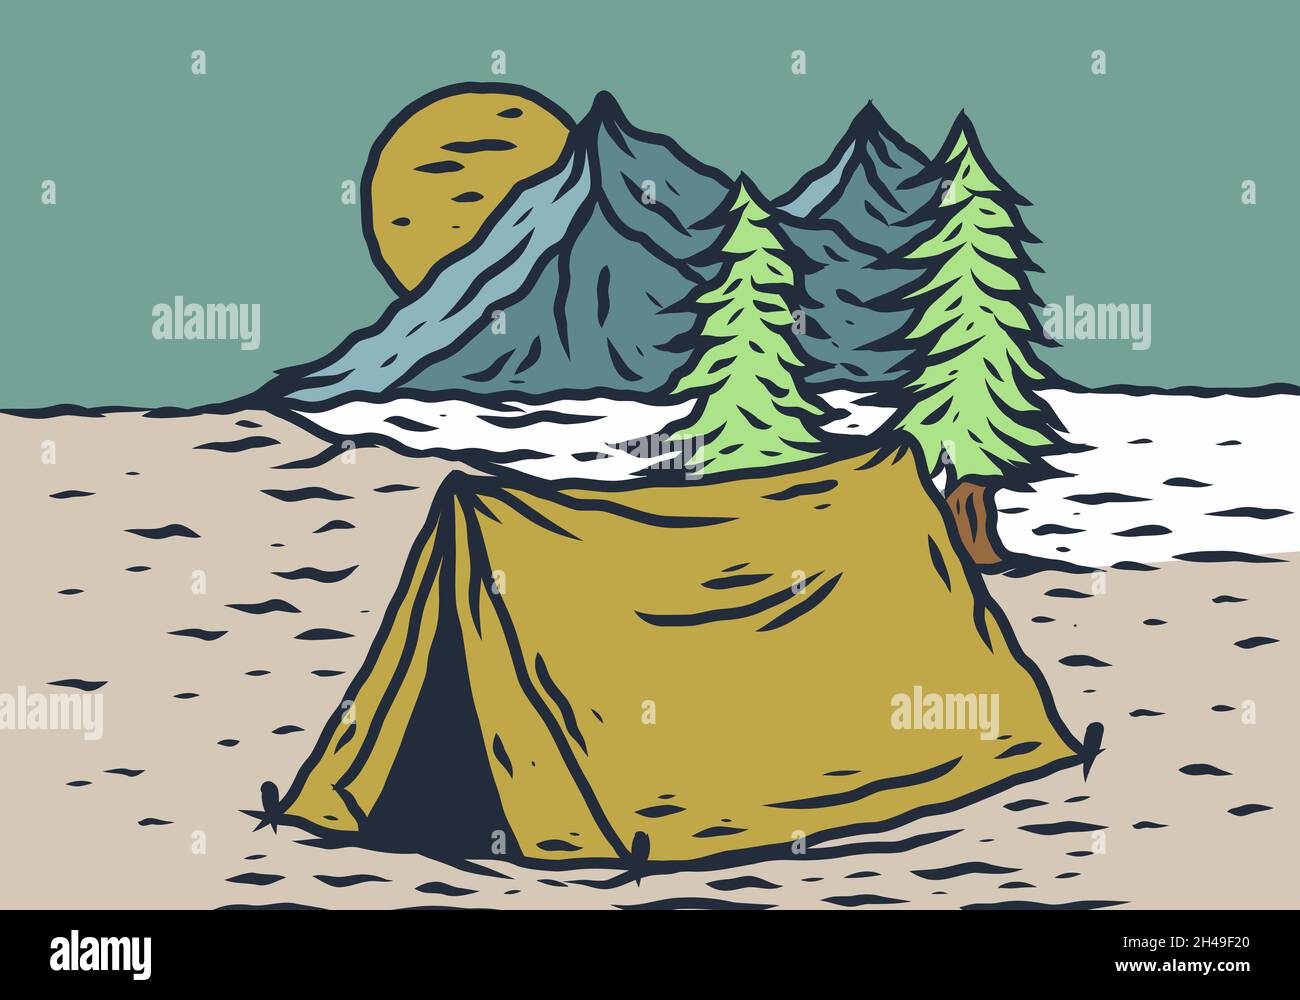 Camping Sketch Images  Free Download on Freepik